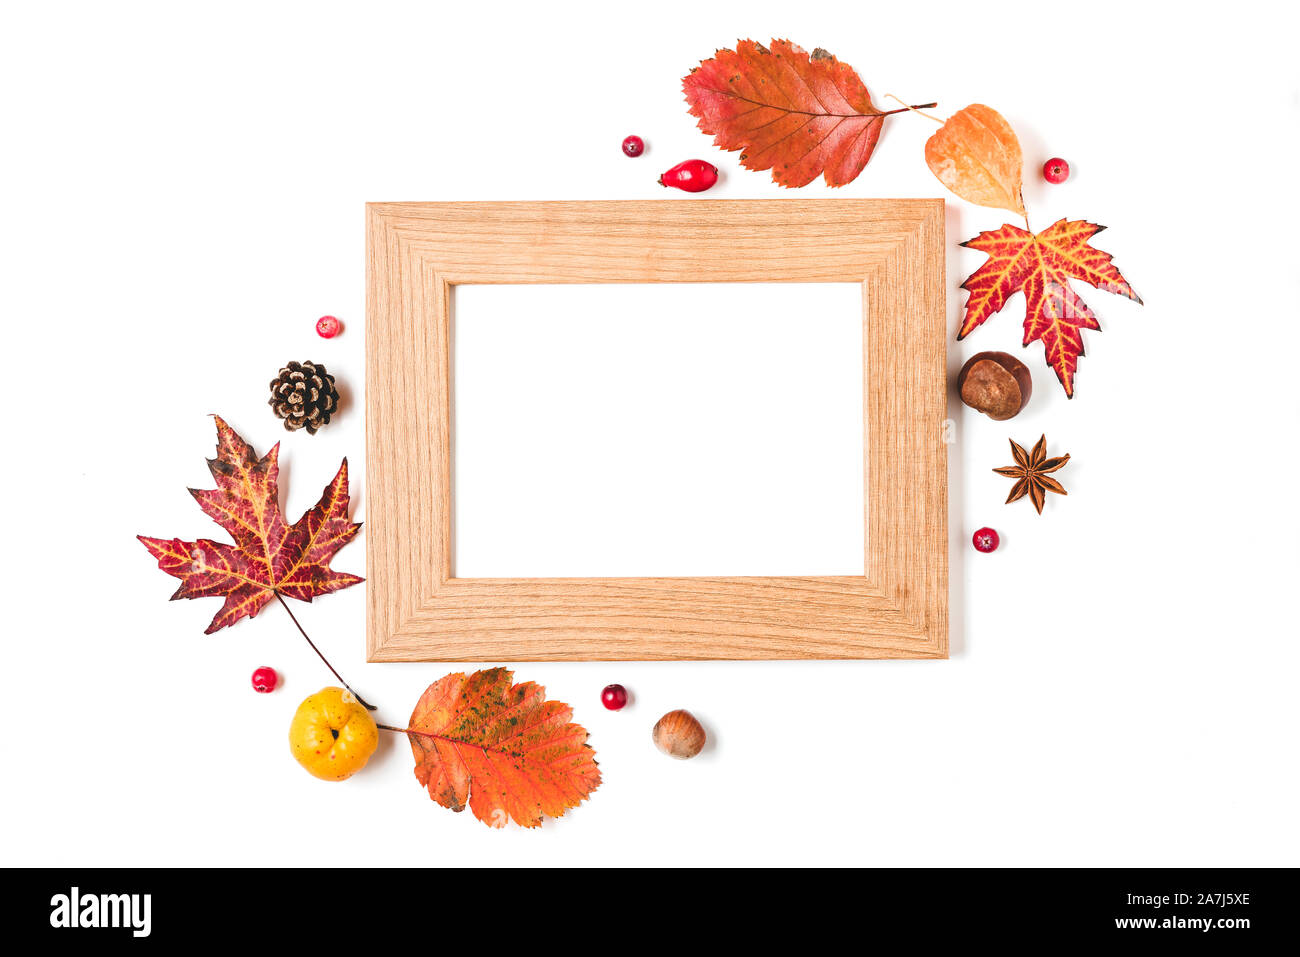 Leeren Bilderrahmen mit Quitte, Herbst Blätter, Nüsse und Beeren auf weißem Hintergrund. Thanksgiving Day Konzept. Flach. top View Stockfoto